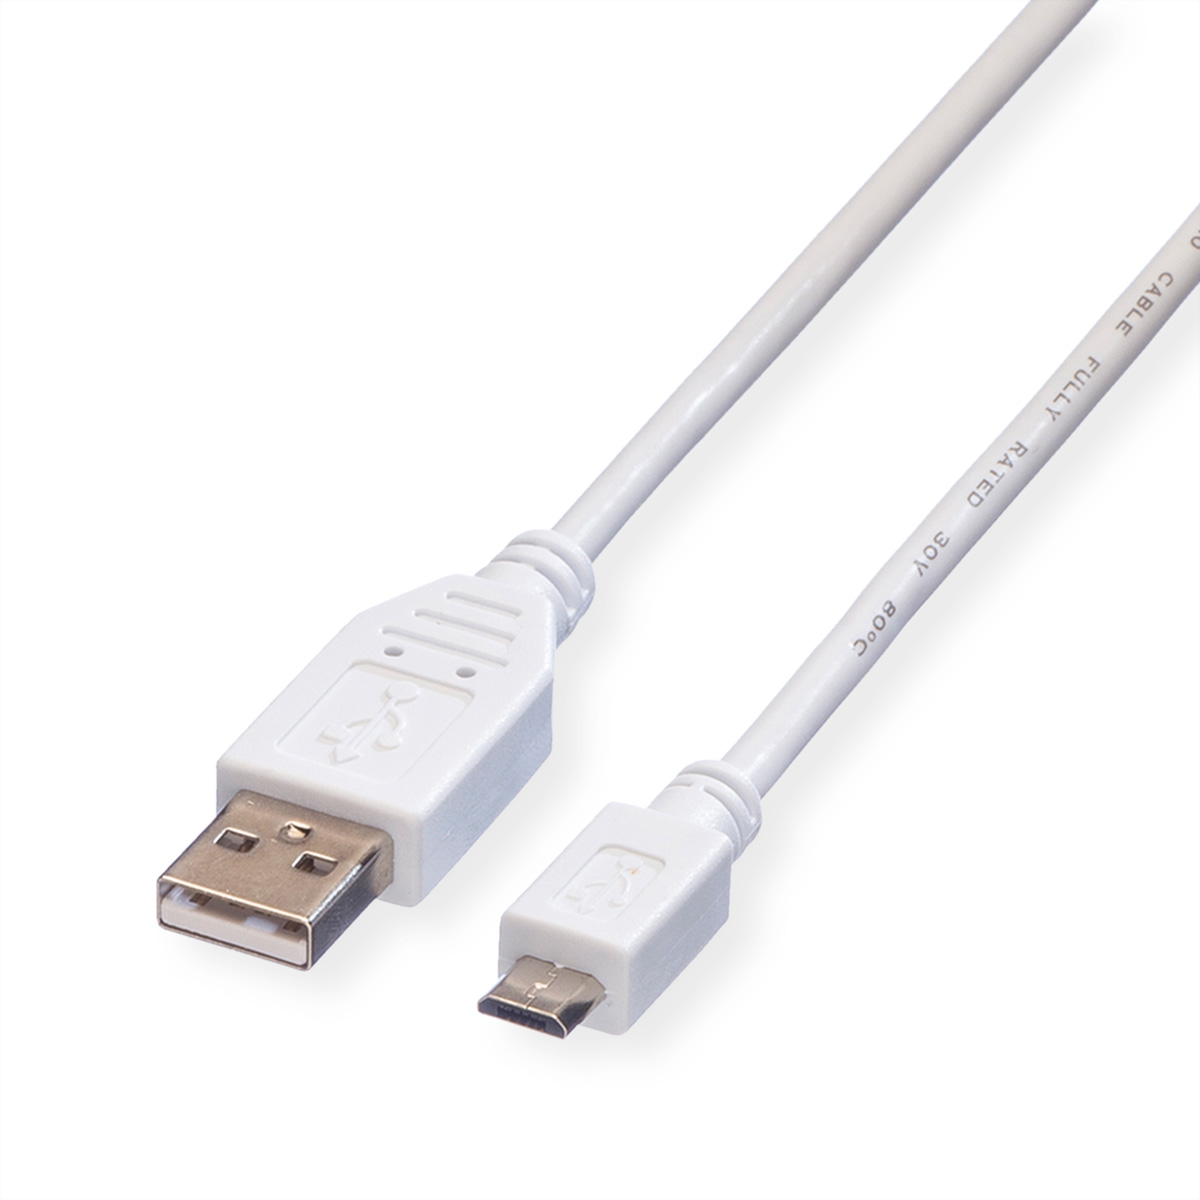 Kabel 2.0 Kabel USB USB Micro VALUE 2.0